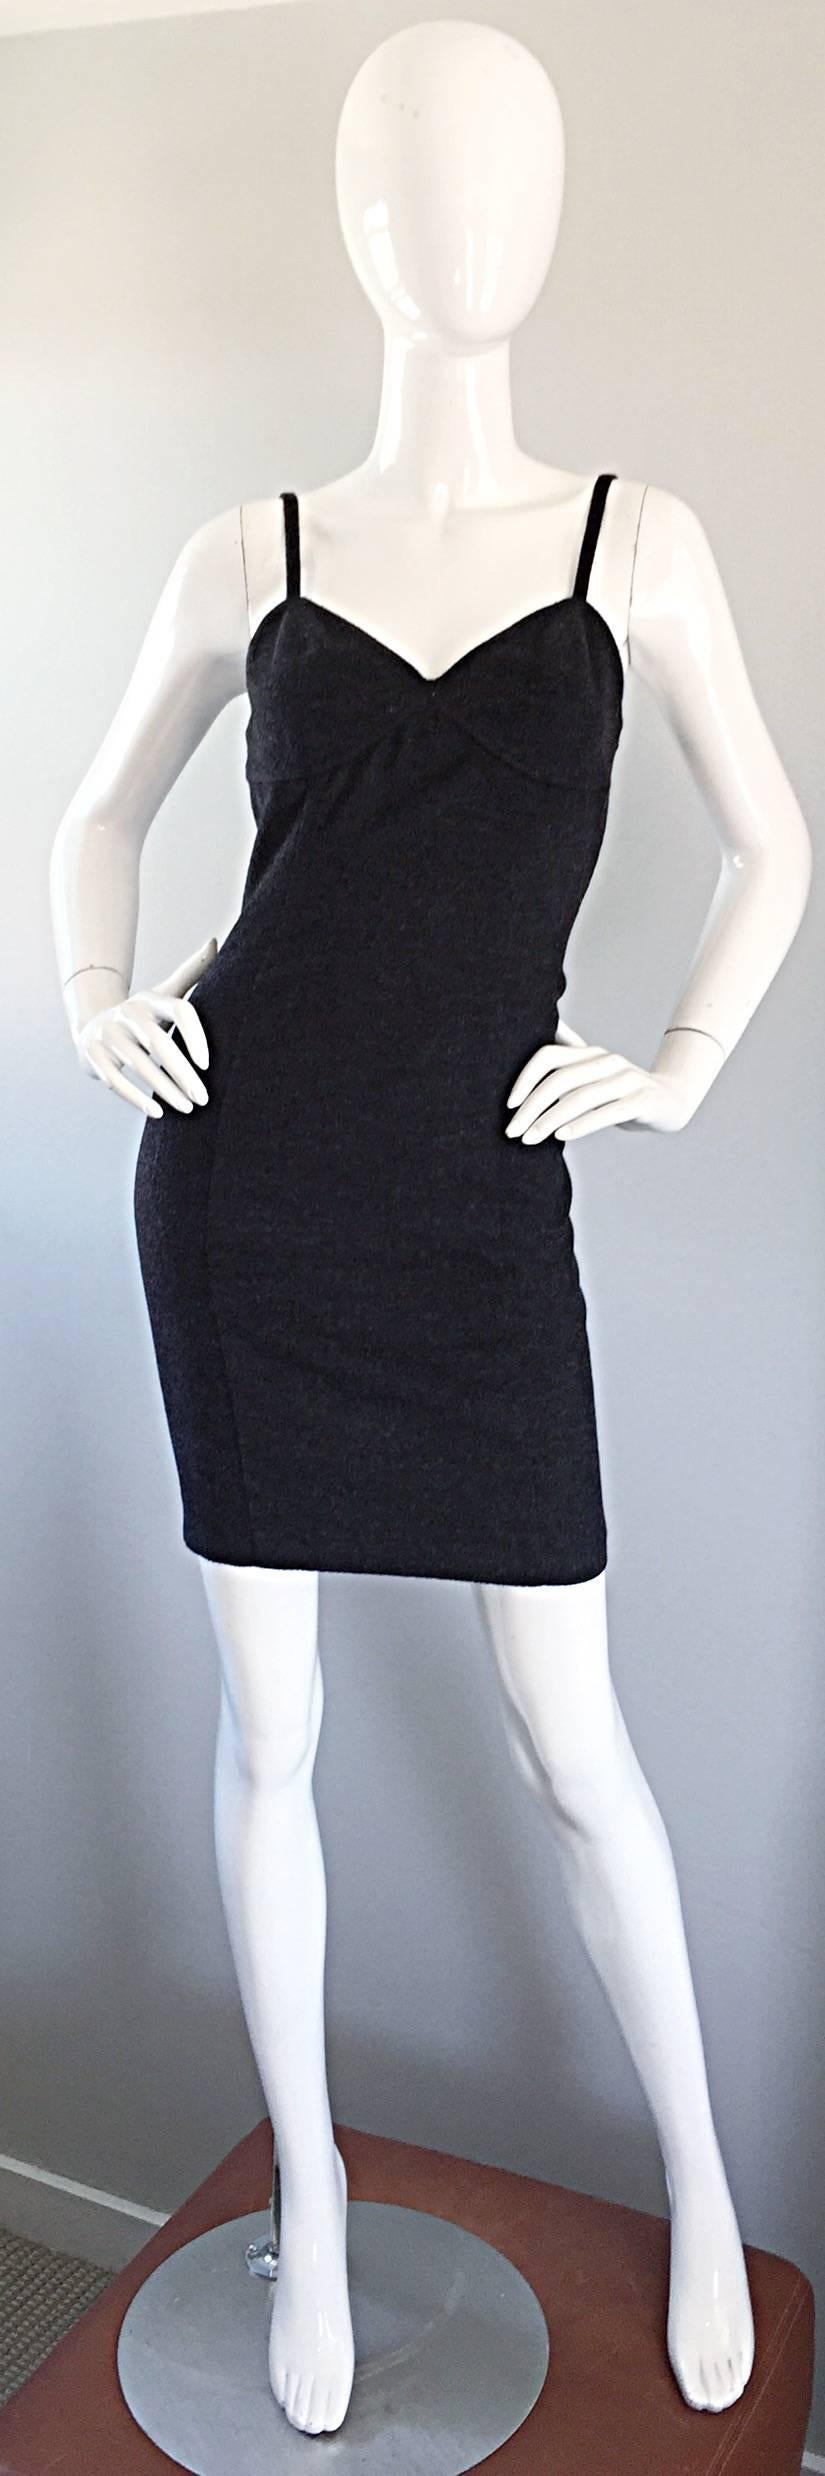 Sexy und doch raffiniert Vintage MICHAEL KORS frühen 1990er Jahren Holzkohle grau ärmelloses Kleid Bodcon! Die perfekte Alternative zum kleinen schwarzen Kleid! Dieses schmeichelhafte Modell schmeichelt dem Körper und umspielt die Kurven an den